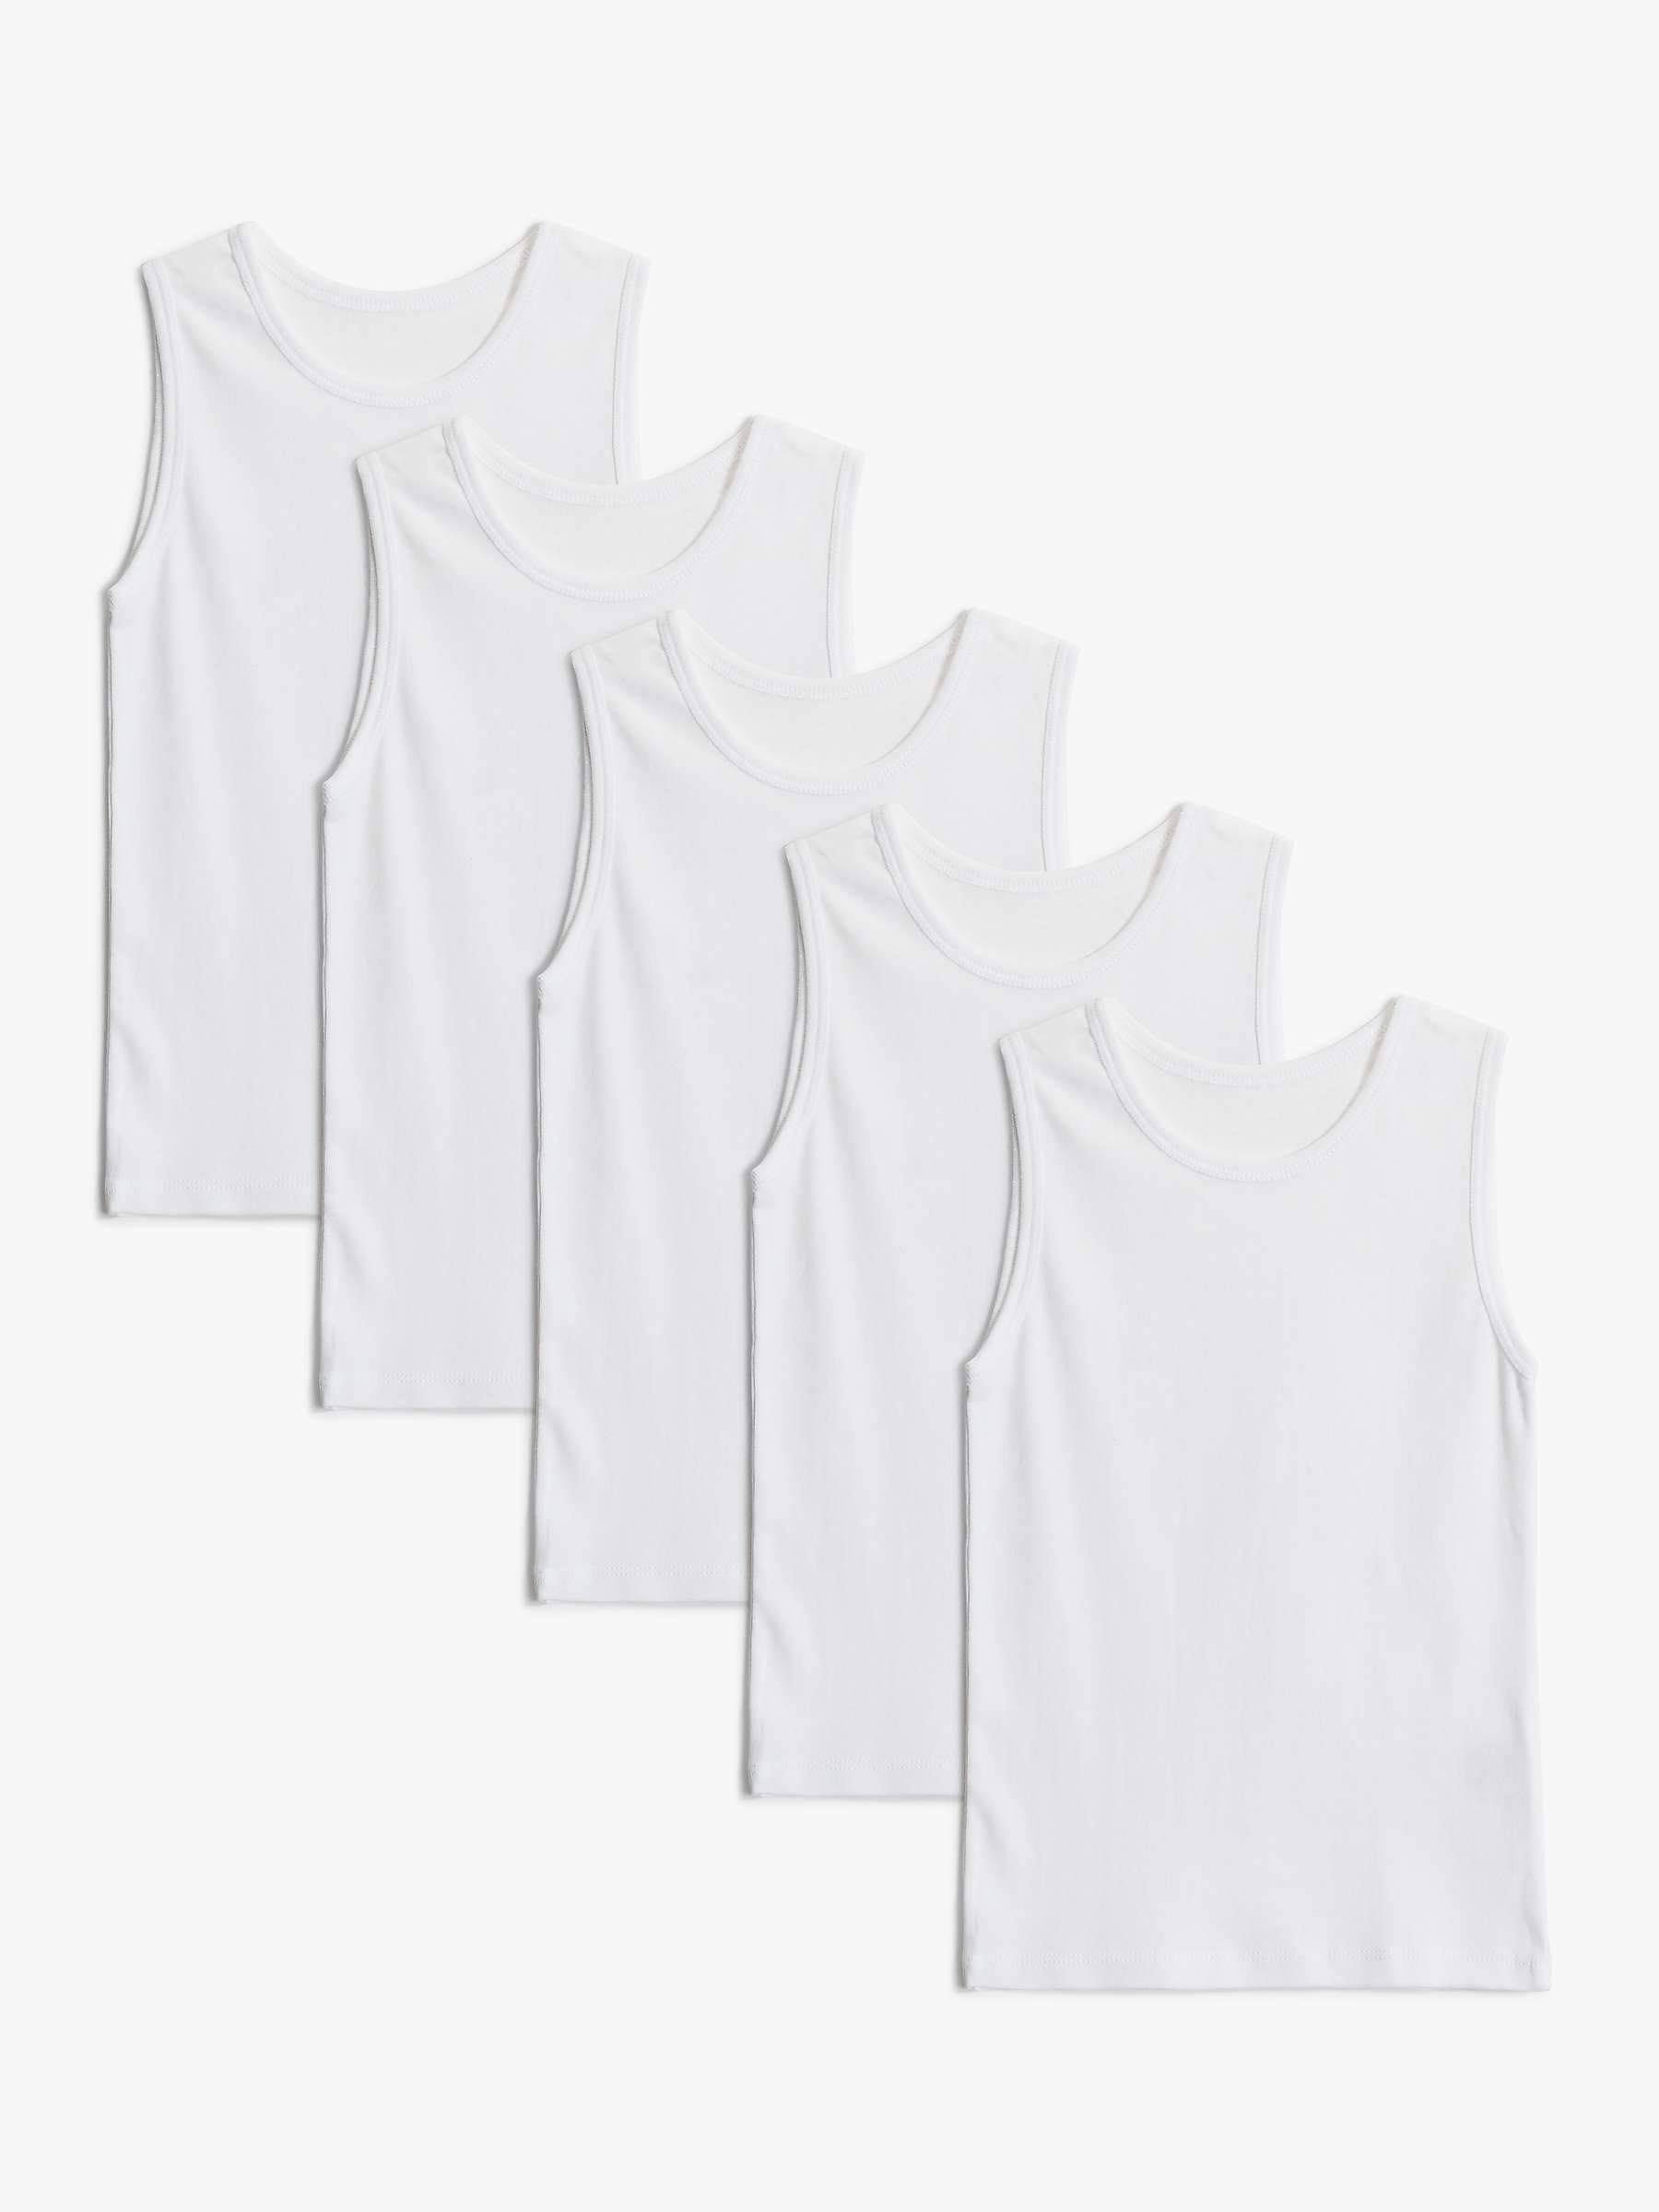 Buy John Lewis Kids' Cotton Singlet Vests, Pack of 5 Online at johnlewis.com